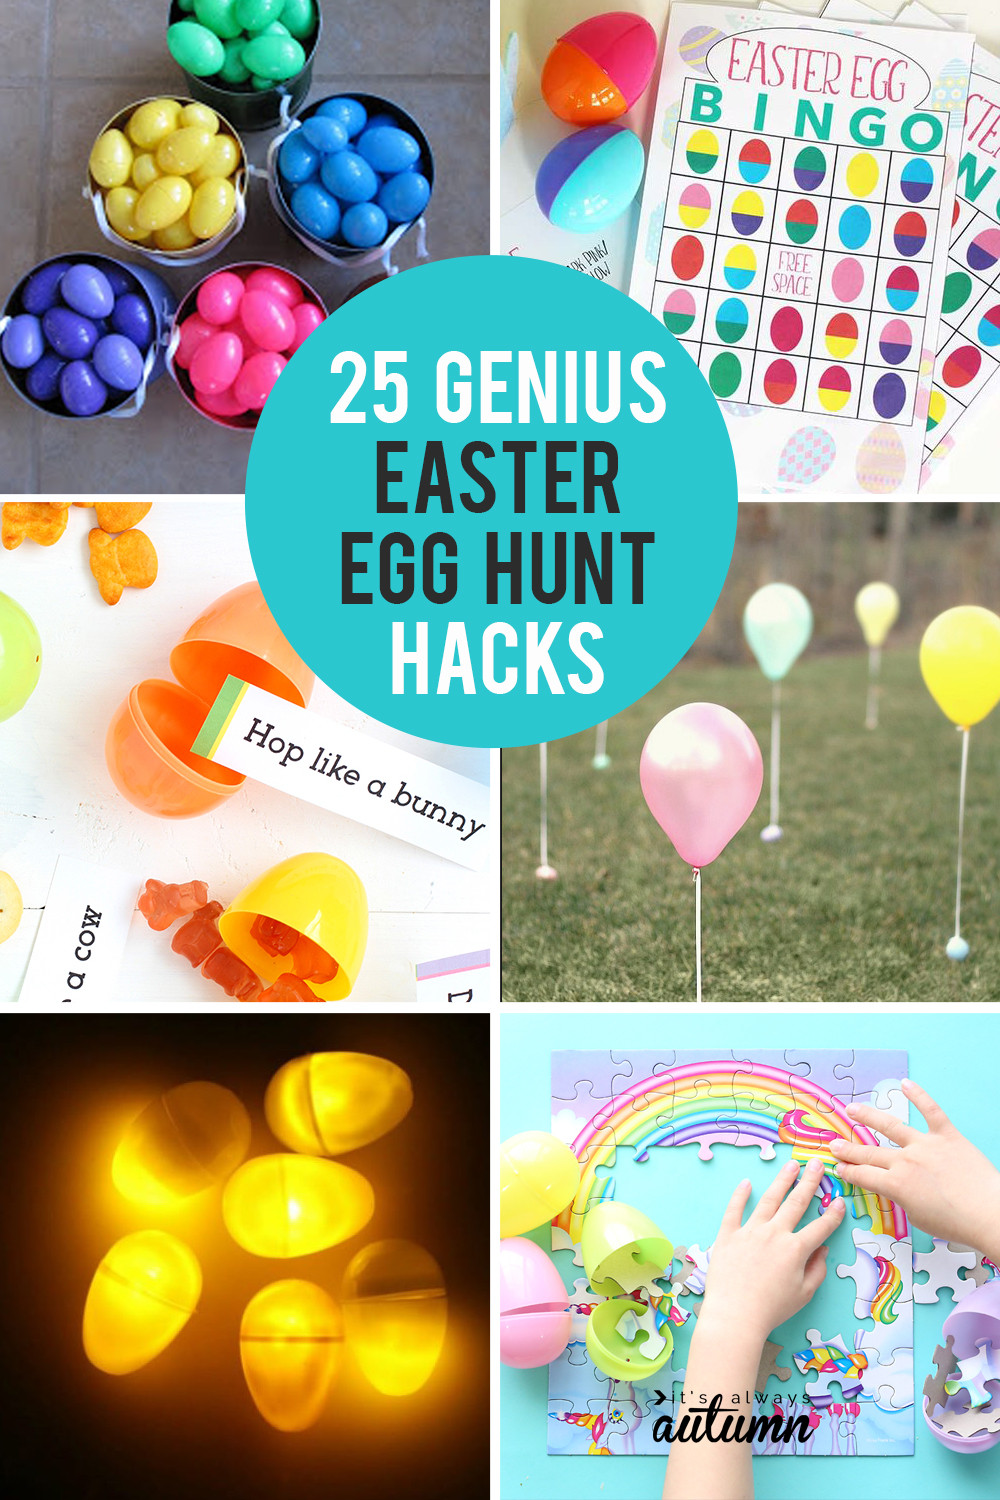 Easter Egg Hunt Ideas For Kids
 25 genius Easter egg hunt ideas hacks It s Always Autumn